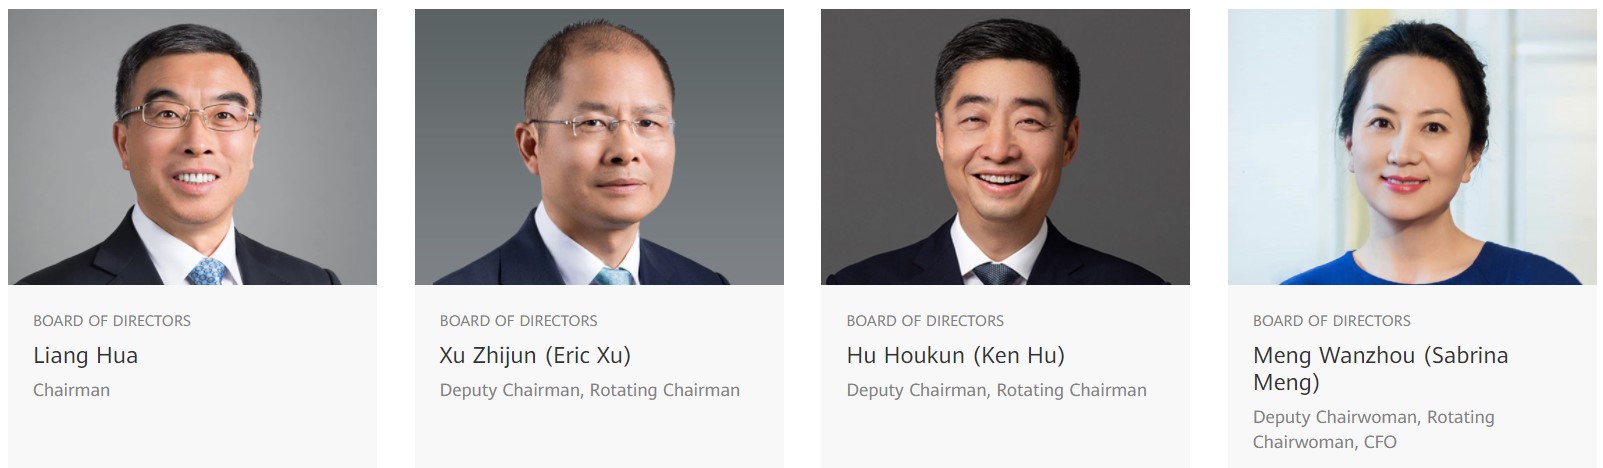 Huawei CFO top leadership rotating chariman meng wanzhou